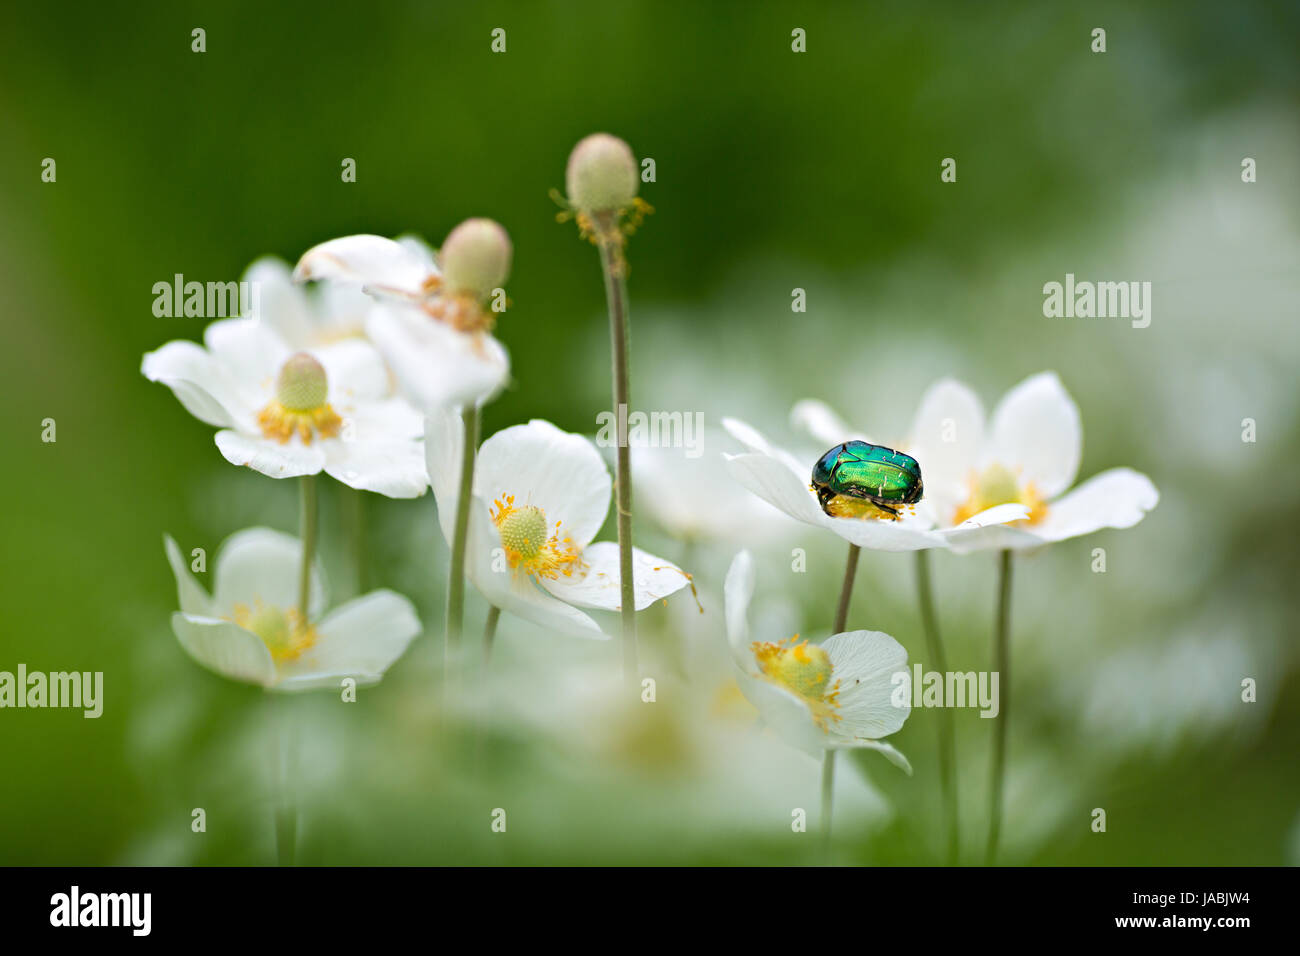 Petit coléoptère vert sur la fleur blanche Banque D'Images